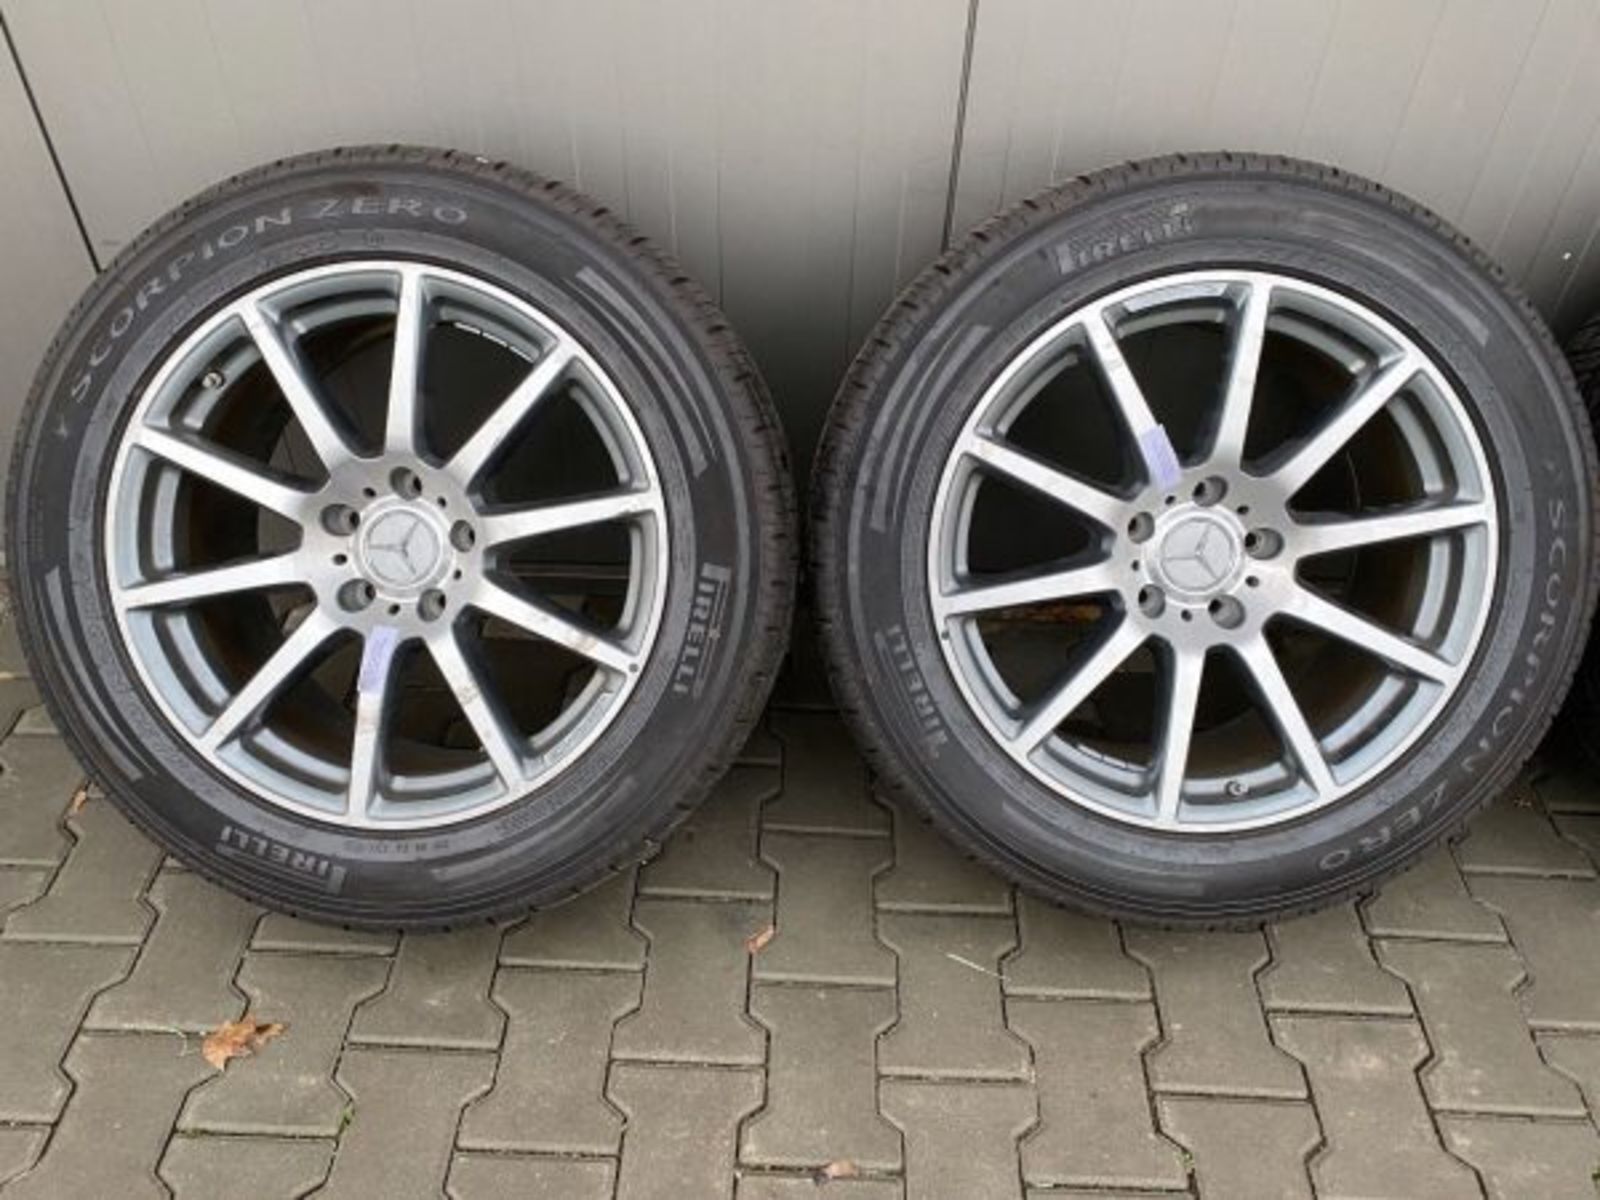 MERCEDES G63 G KLASSE Rader satz wheels set 20 inch 354830089339 3